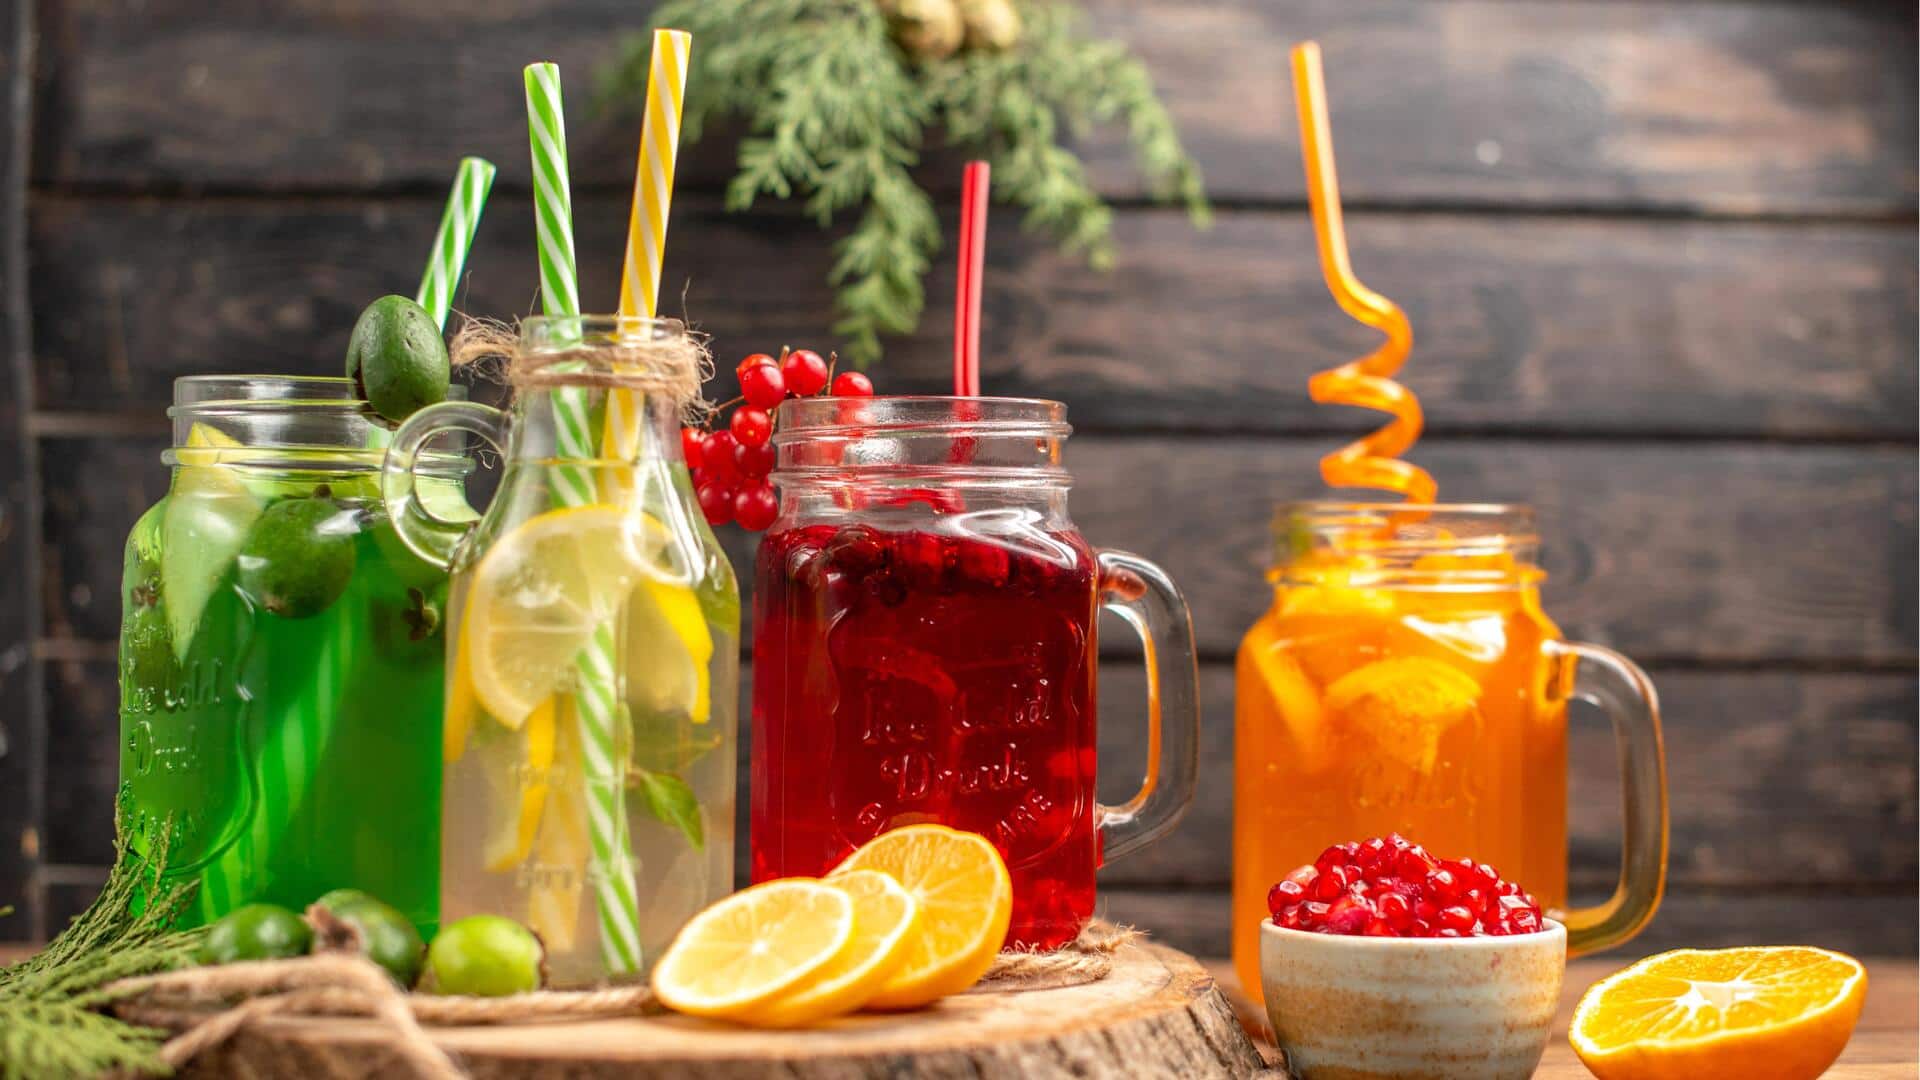 डाइटिंग के दौरान इन 5 स्वस्थ पेय के विकल्पों को चुनें, सेहत के लिए होंगे फायदेमंद